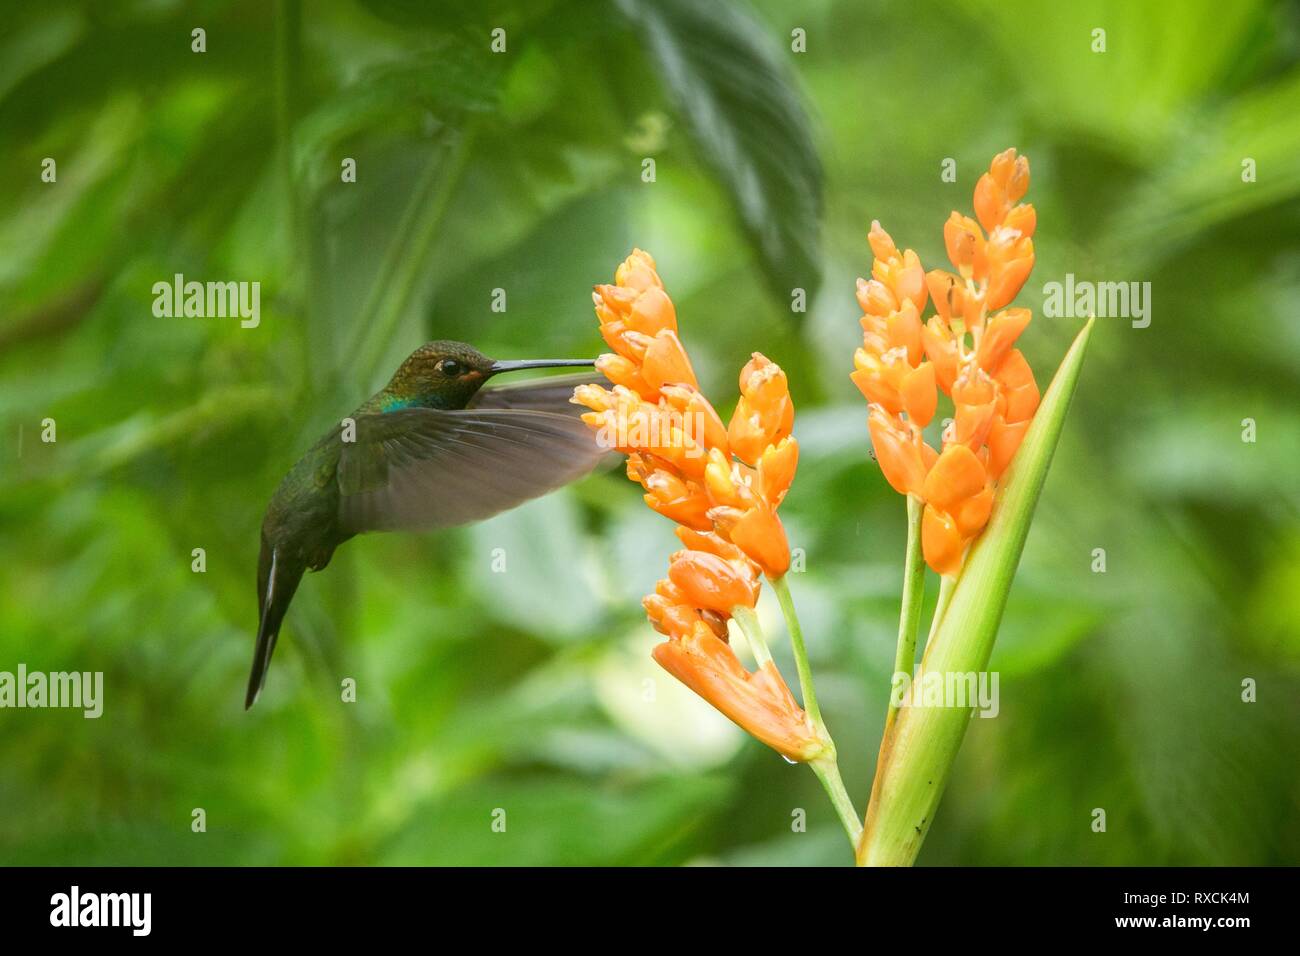 Hummingbird planant à côté de fleur orange,tropical forest,Equateur,bird sucer le nectar des fleurs dans le jardin d'oiseaux aux ailes déployées,nature,wild Banque D'Images